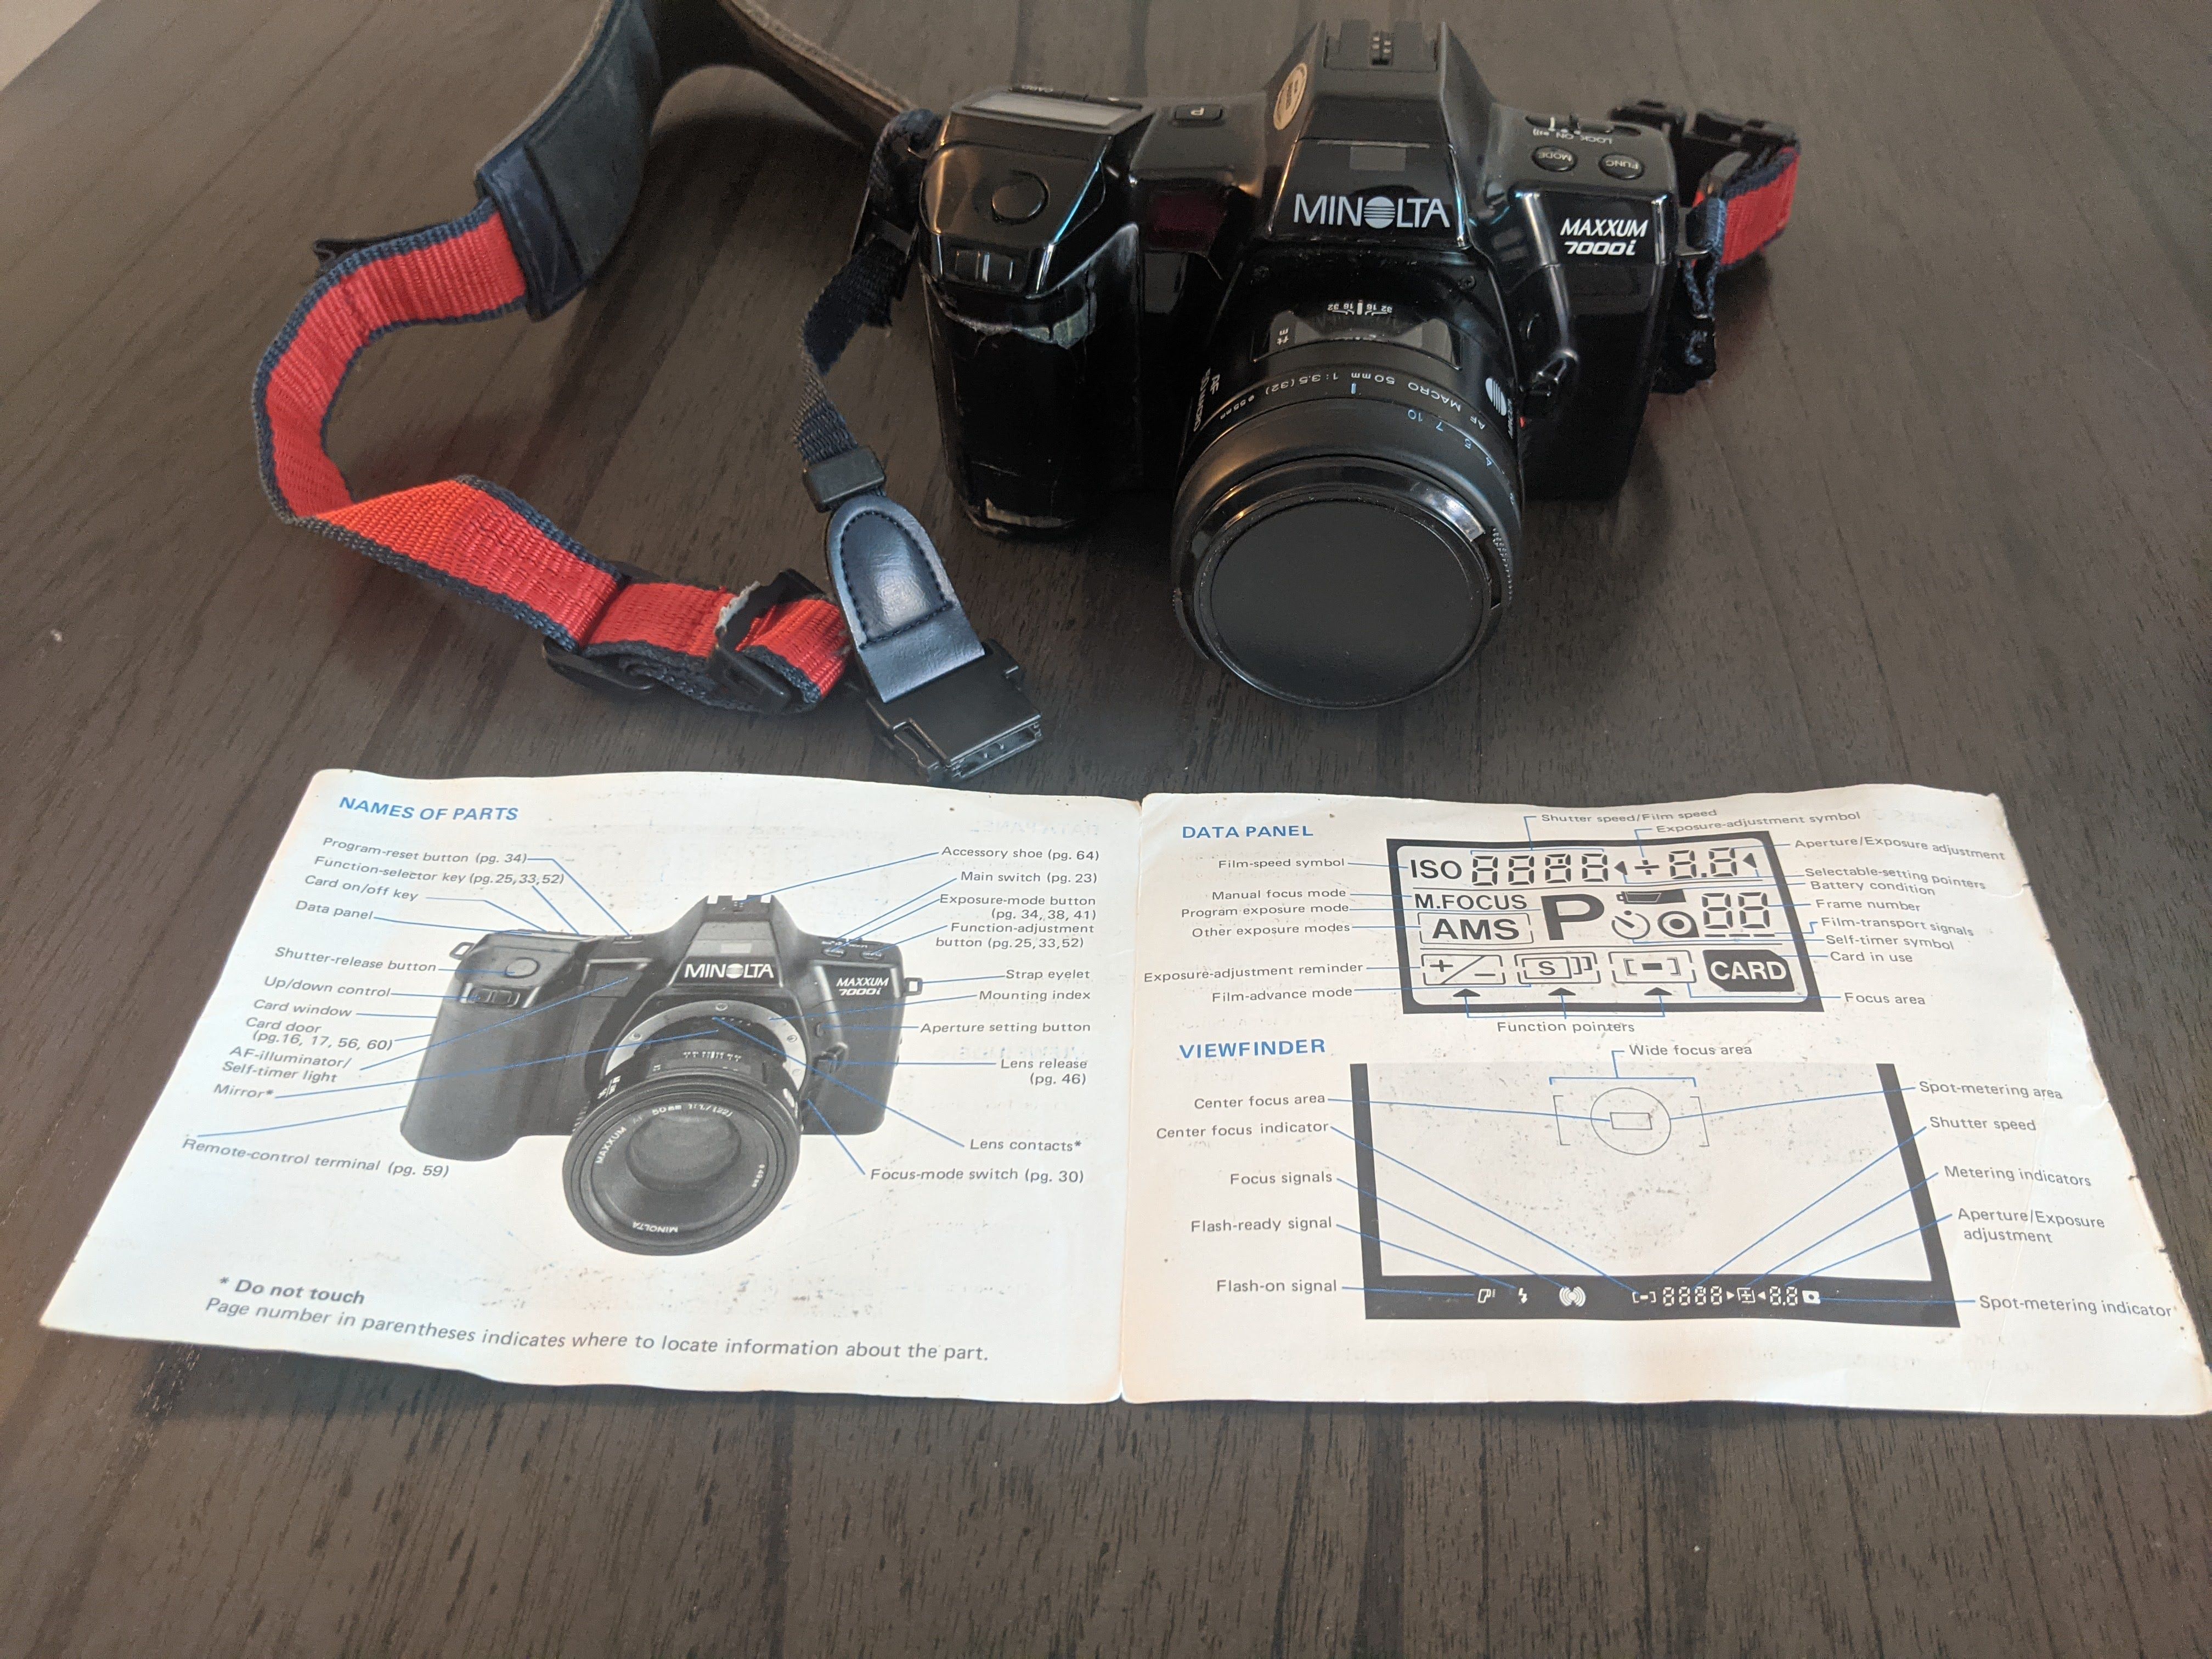 35mm SLR Film Camera Minolta Maxxum 7000i